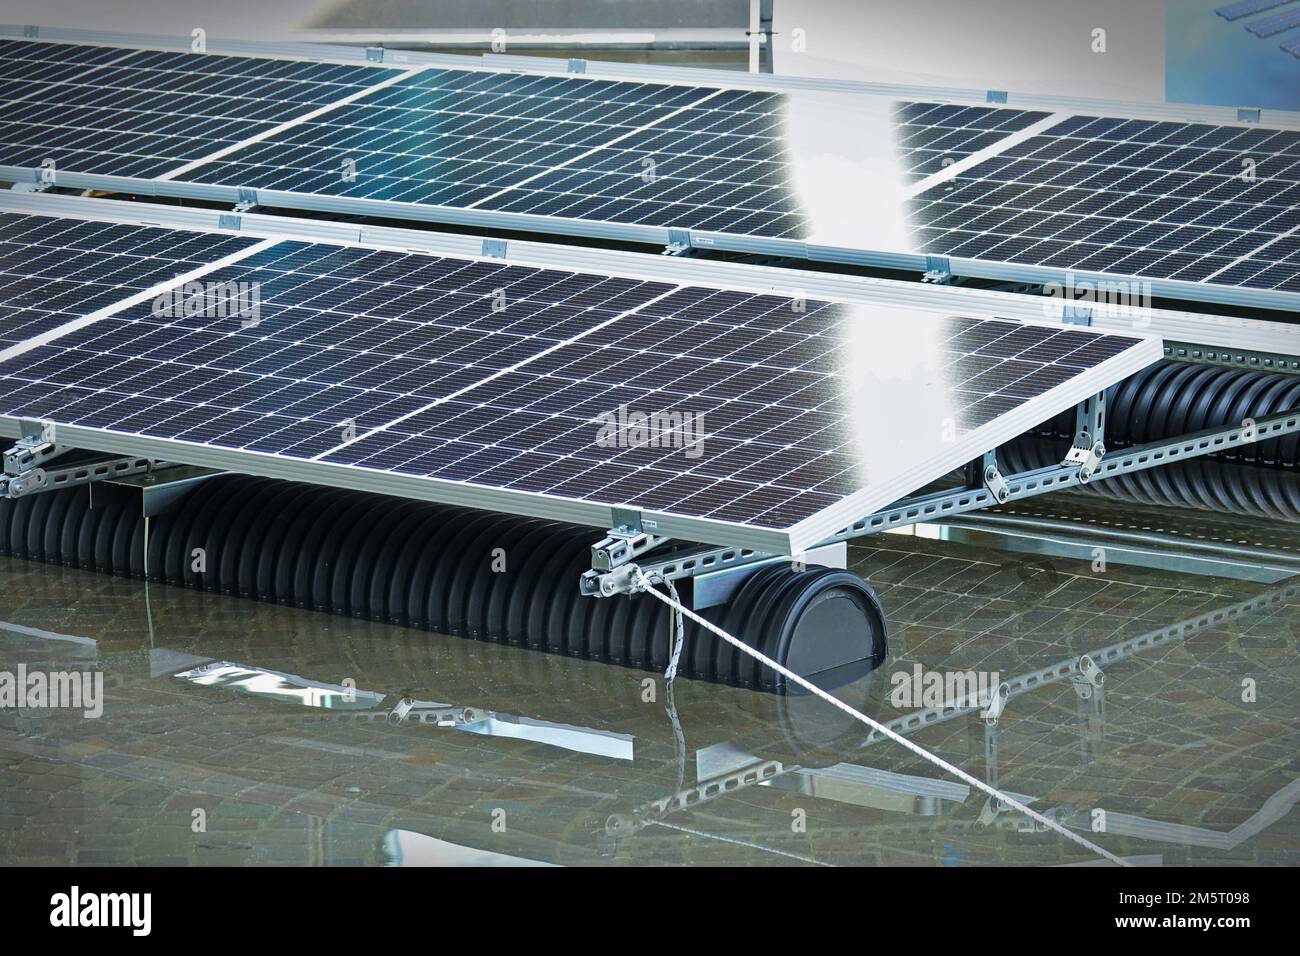 Modul mit schwimmendem Rahmen für Photovoltaik-Systeme, die auf Wasser schwimmend sind. Rimini, Italien - November 2022 Stockfoto